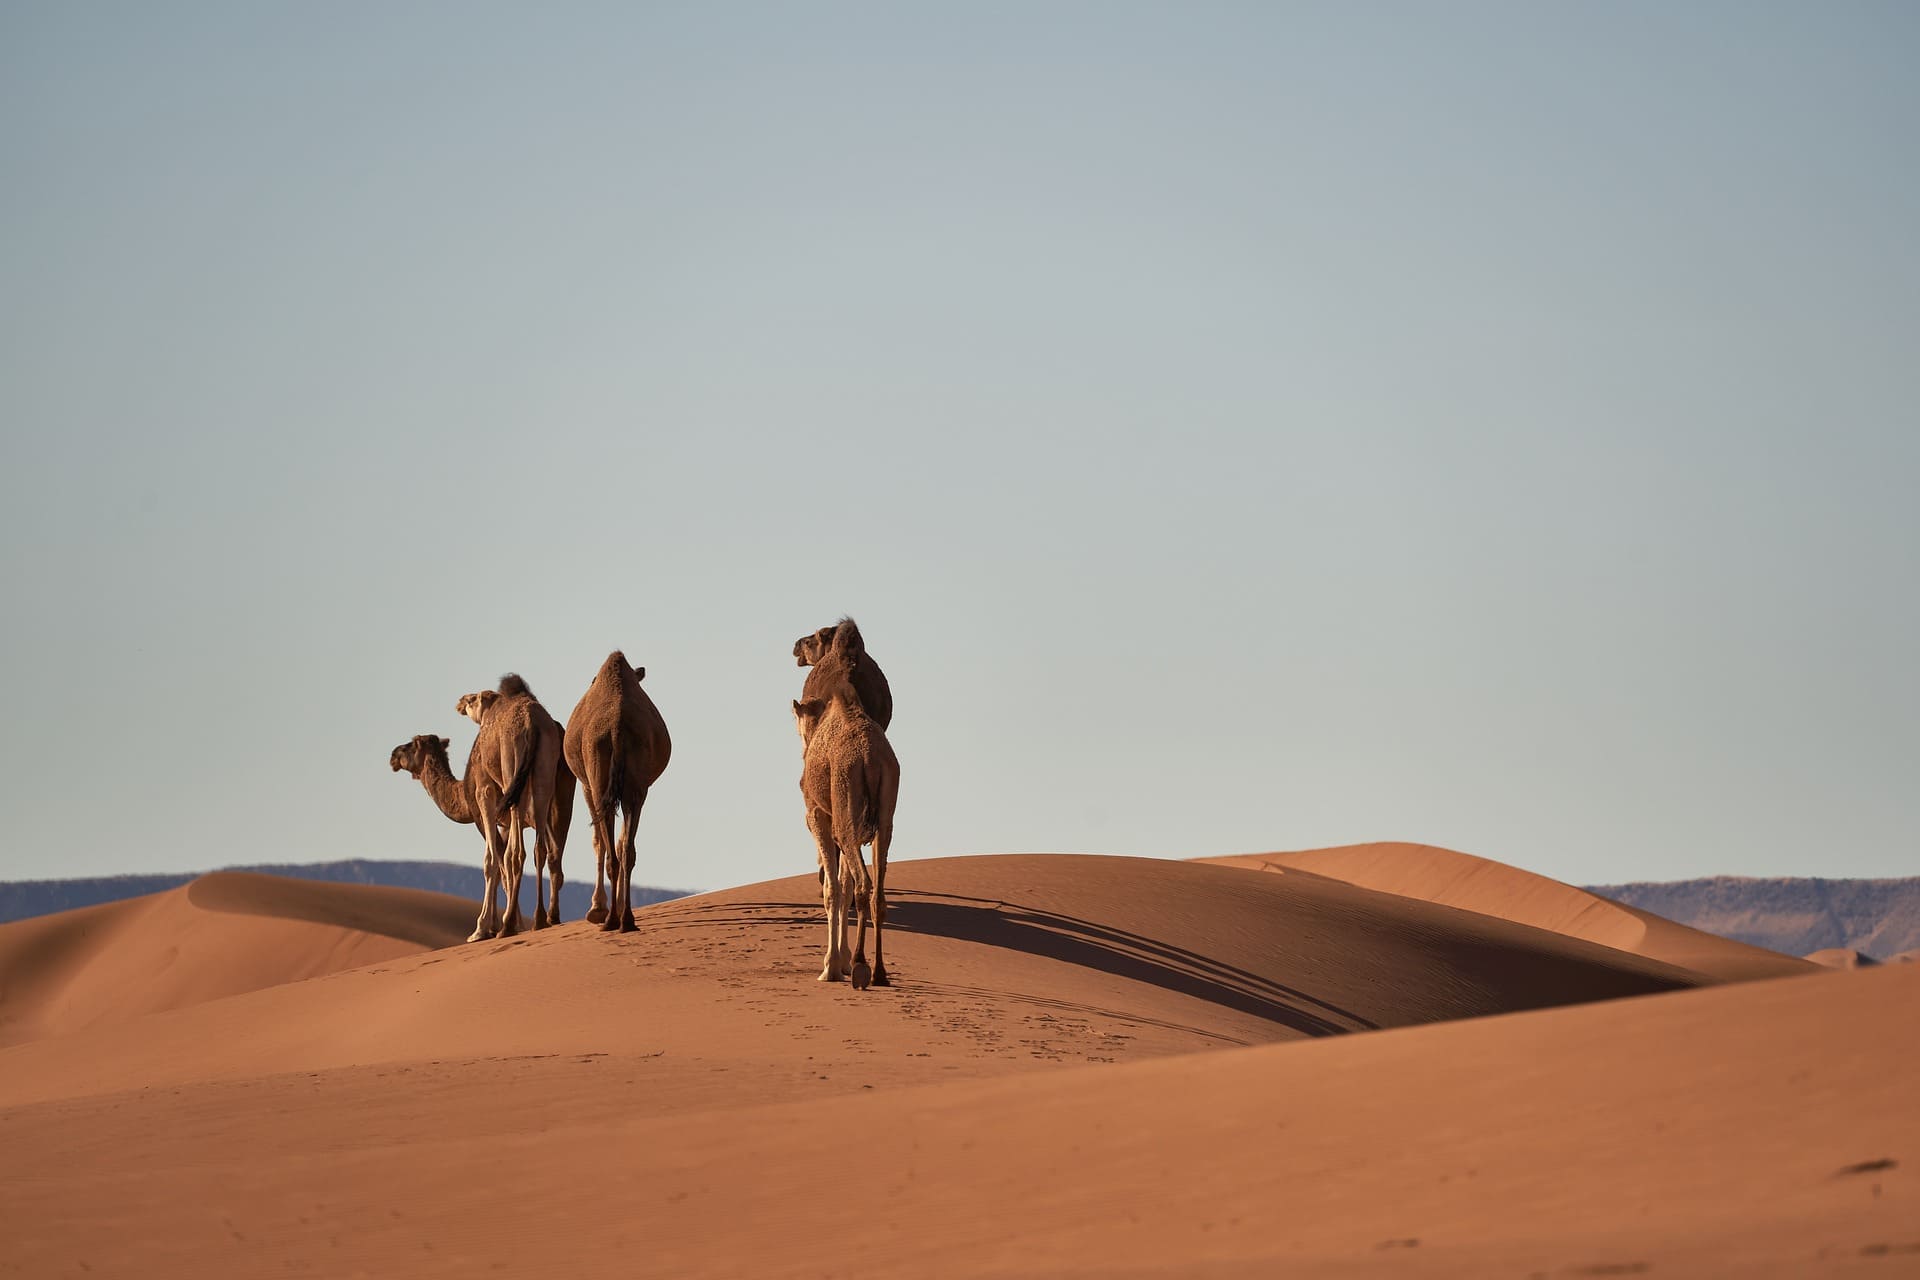 Sahara desert, the largest hot desert on the planet